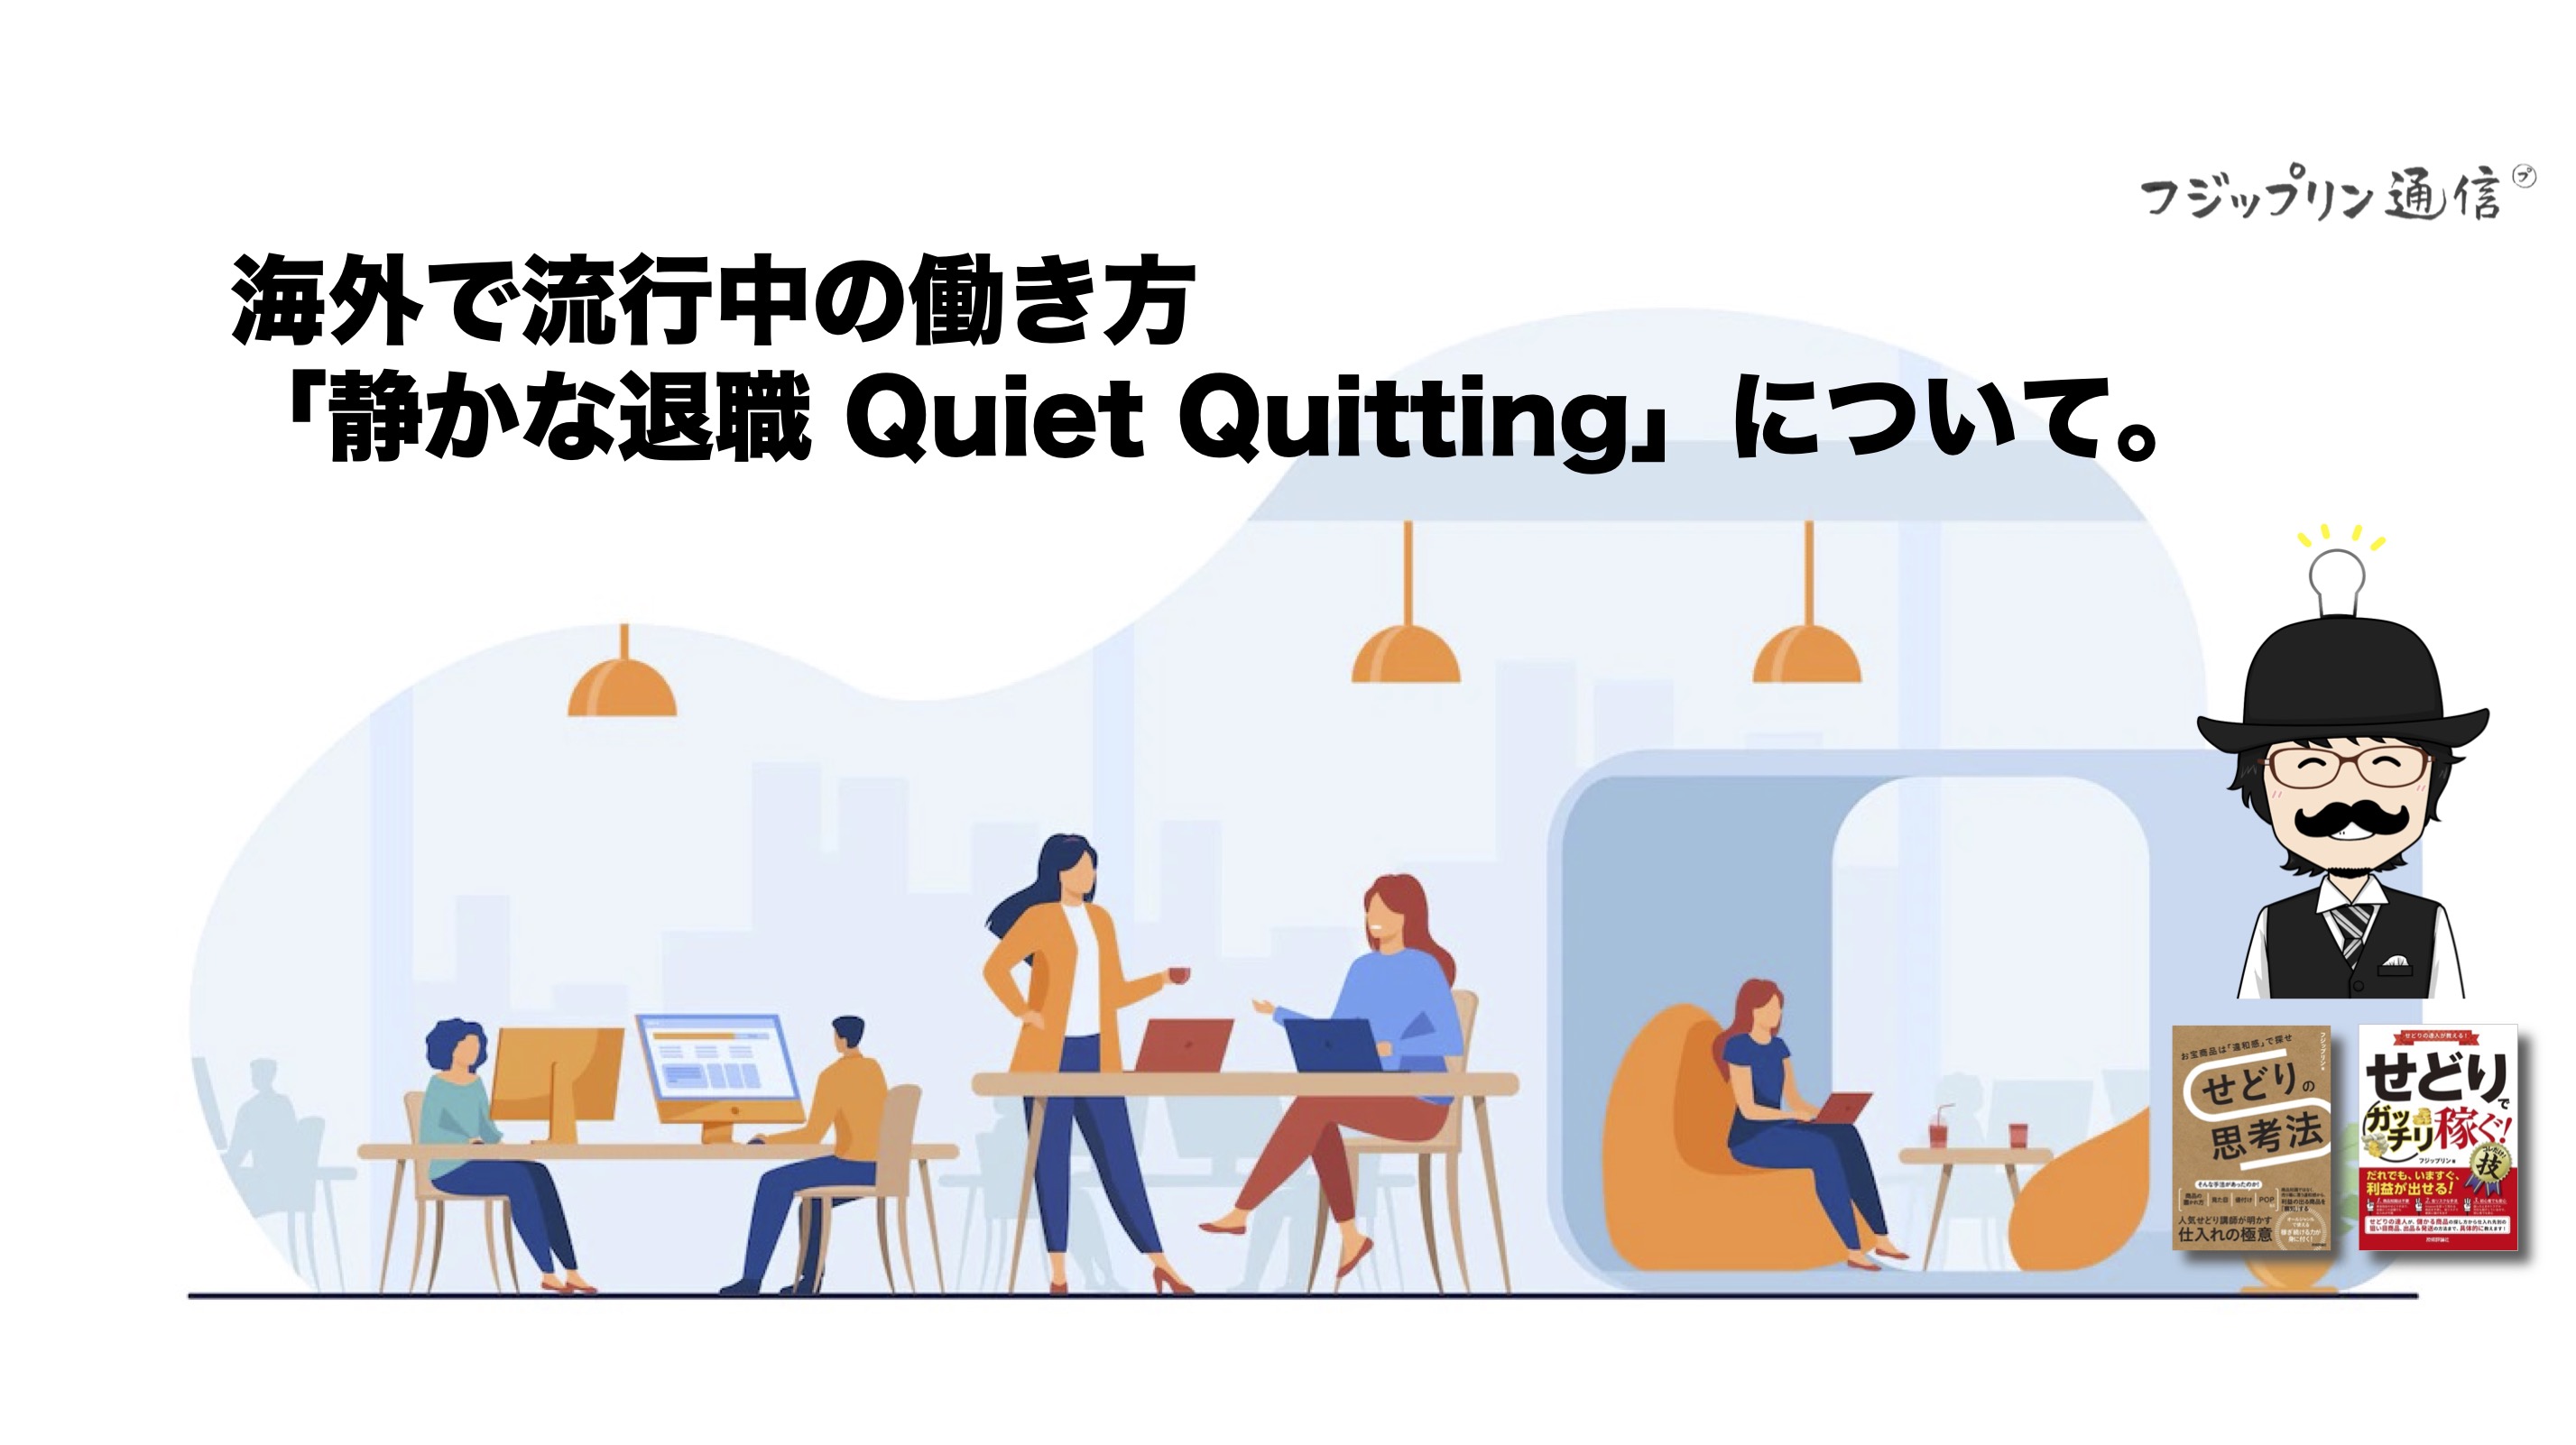 海外で流行中の働き方「静かな退職 Quiet Quitting」について。